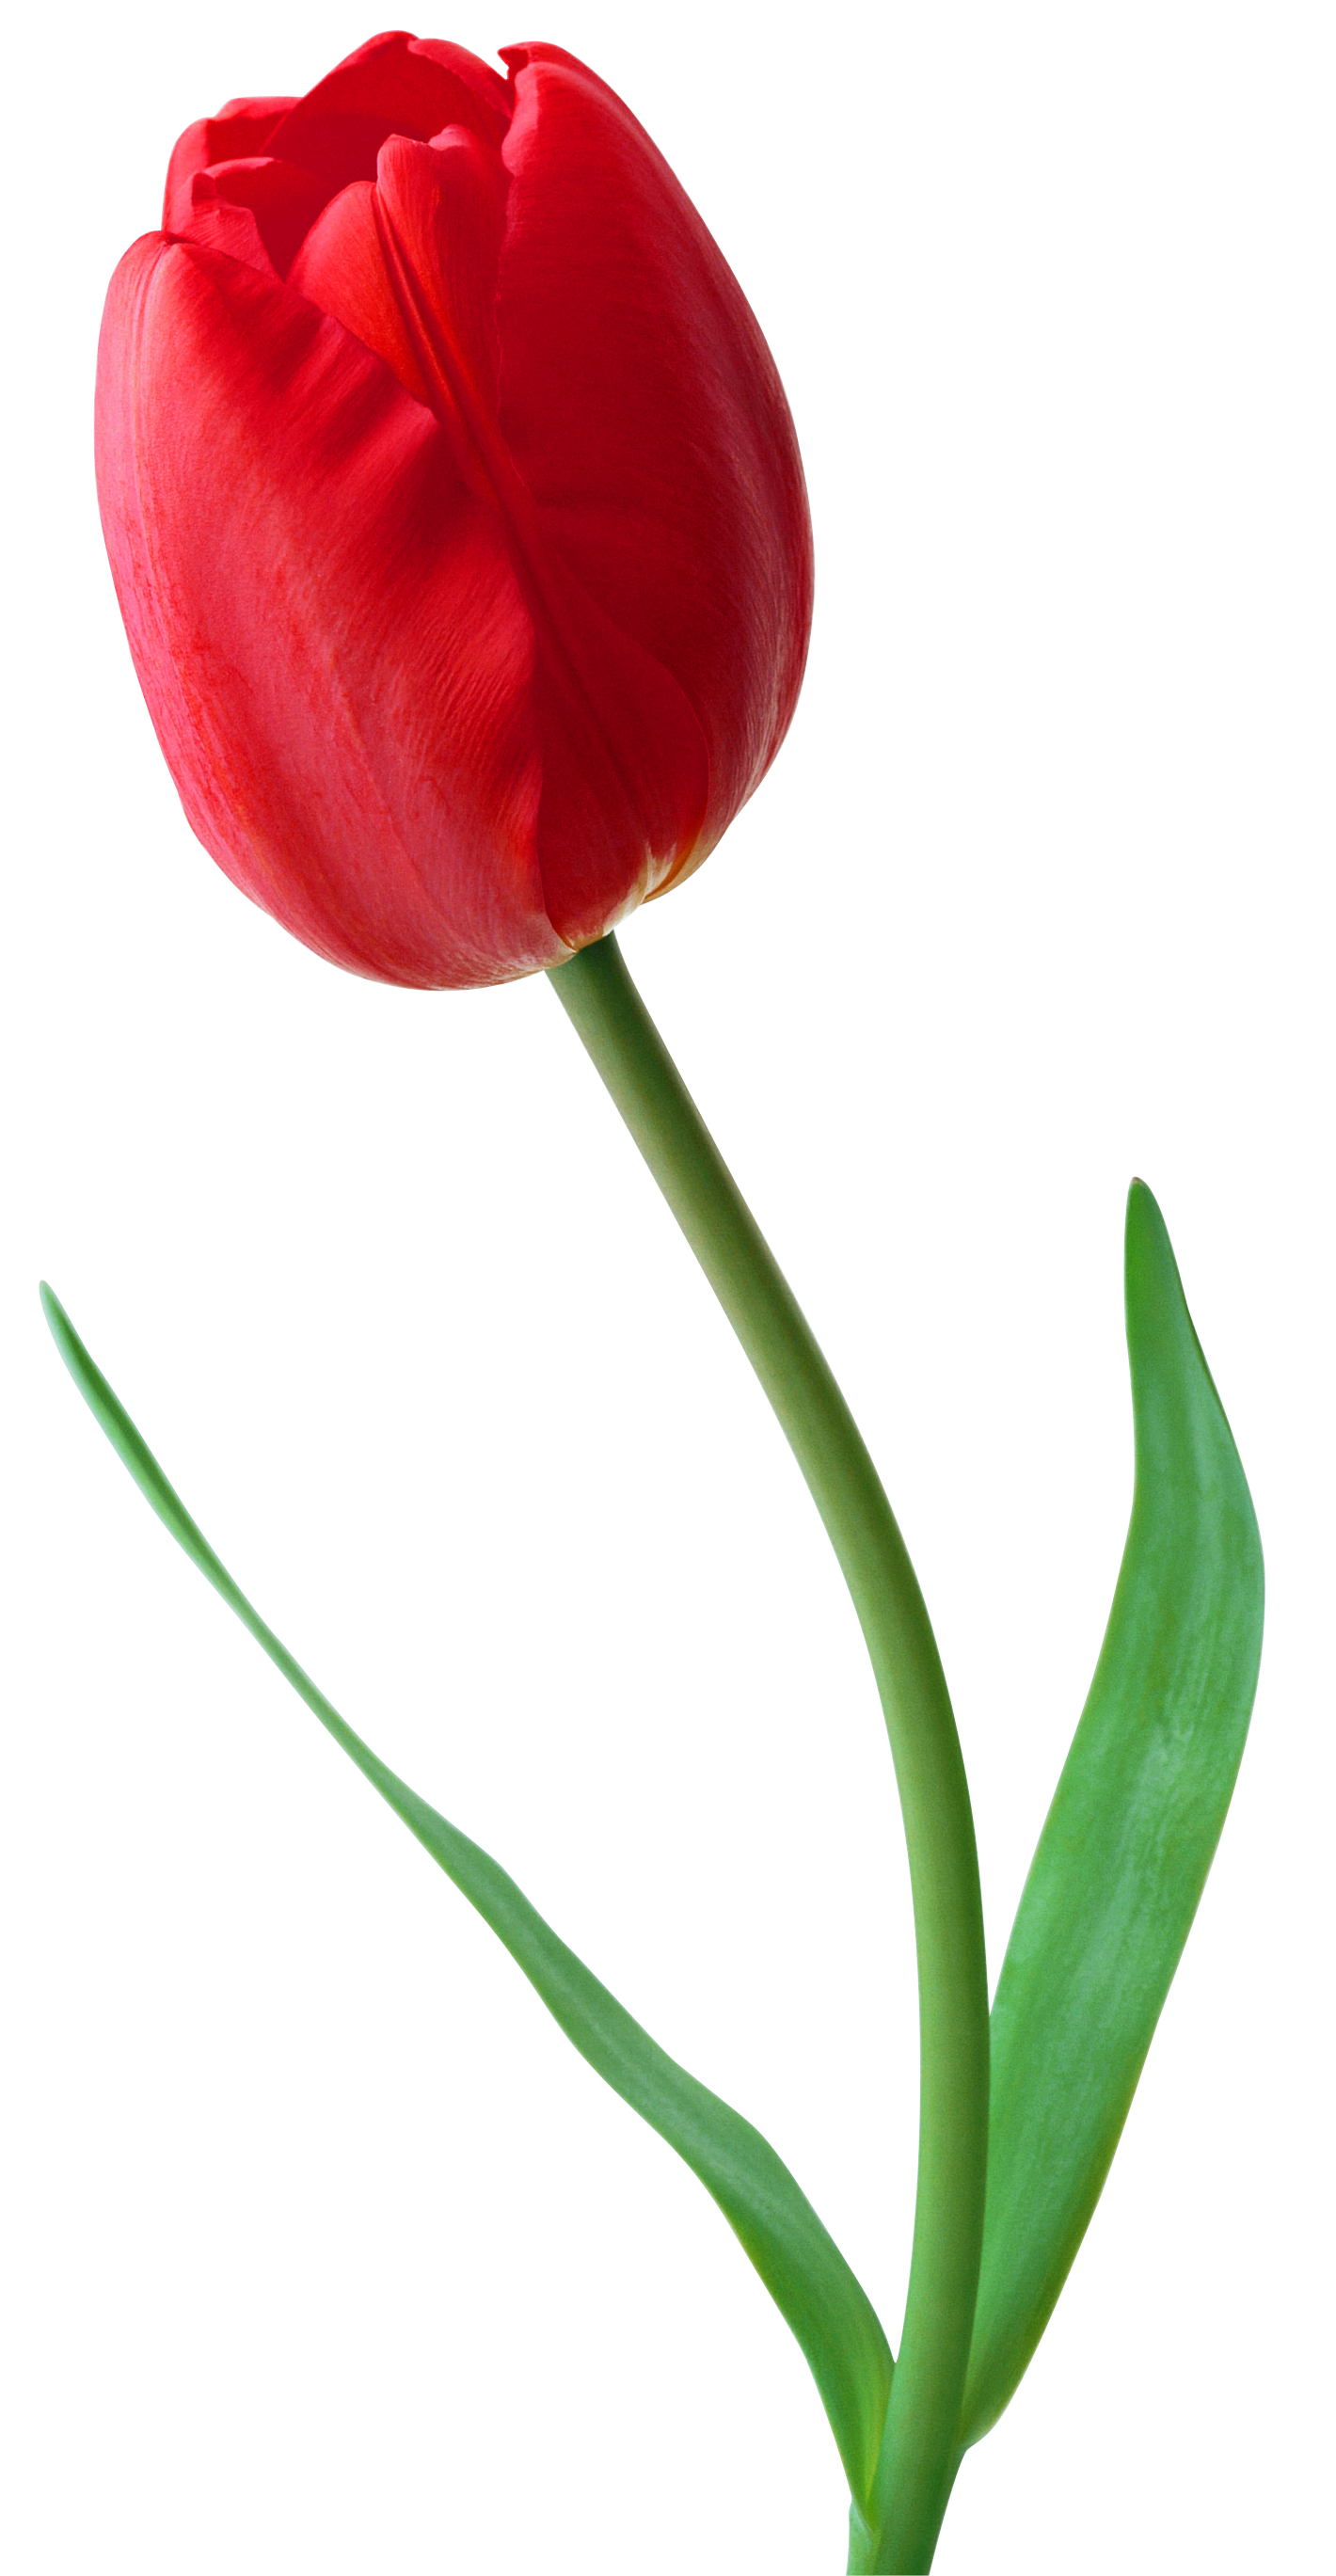 tulips by sherryjane on Clipa